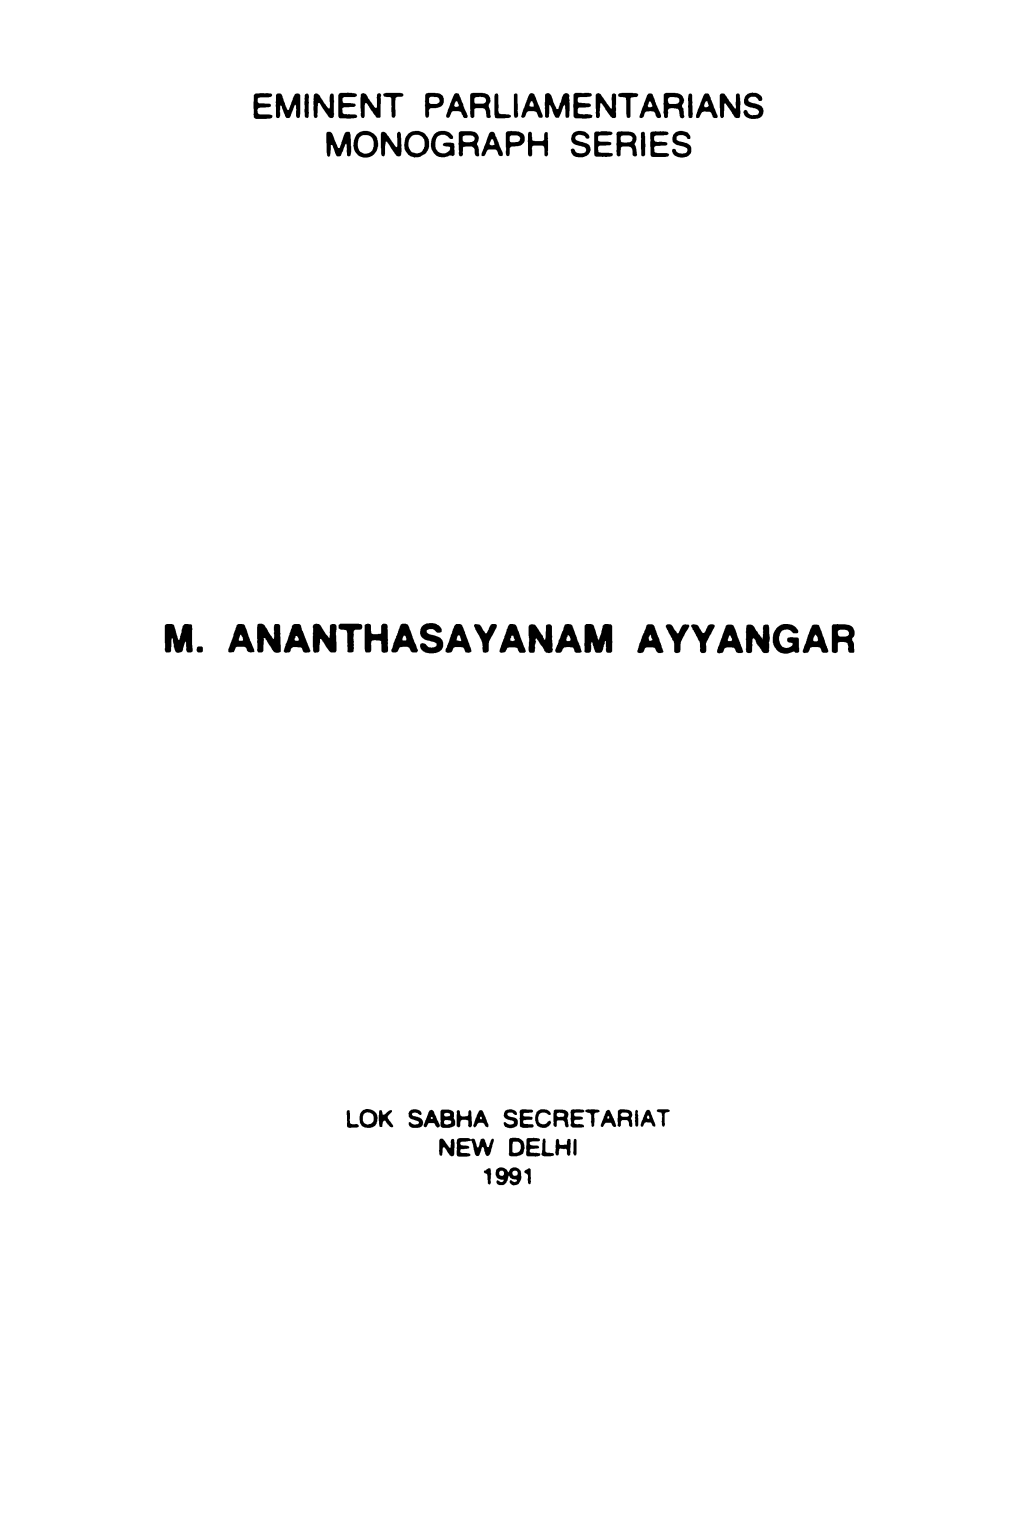 M. Ananthasayanam Ayyangar